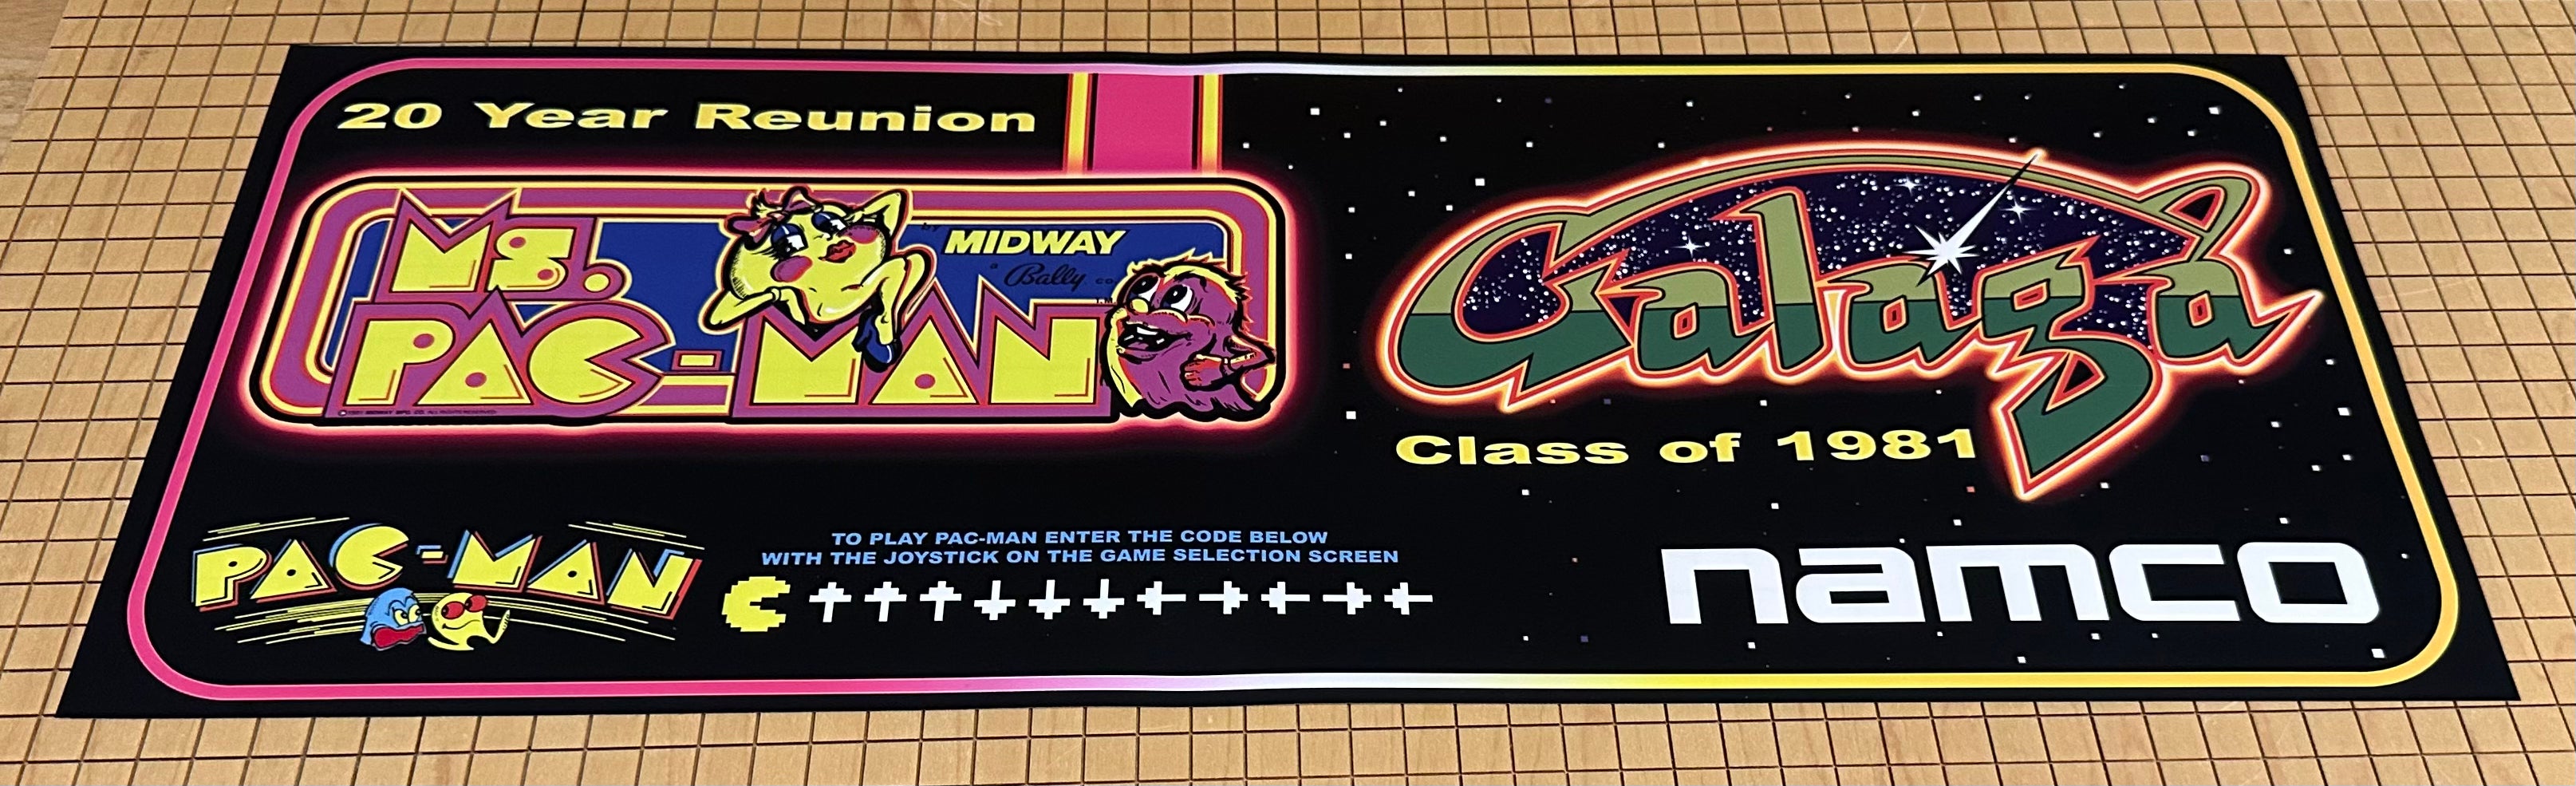 Carpa de reunión de 20 años con código Pac-Man